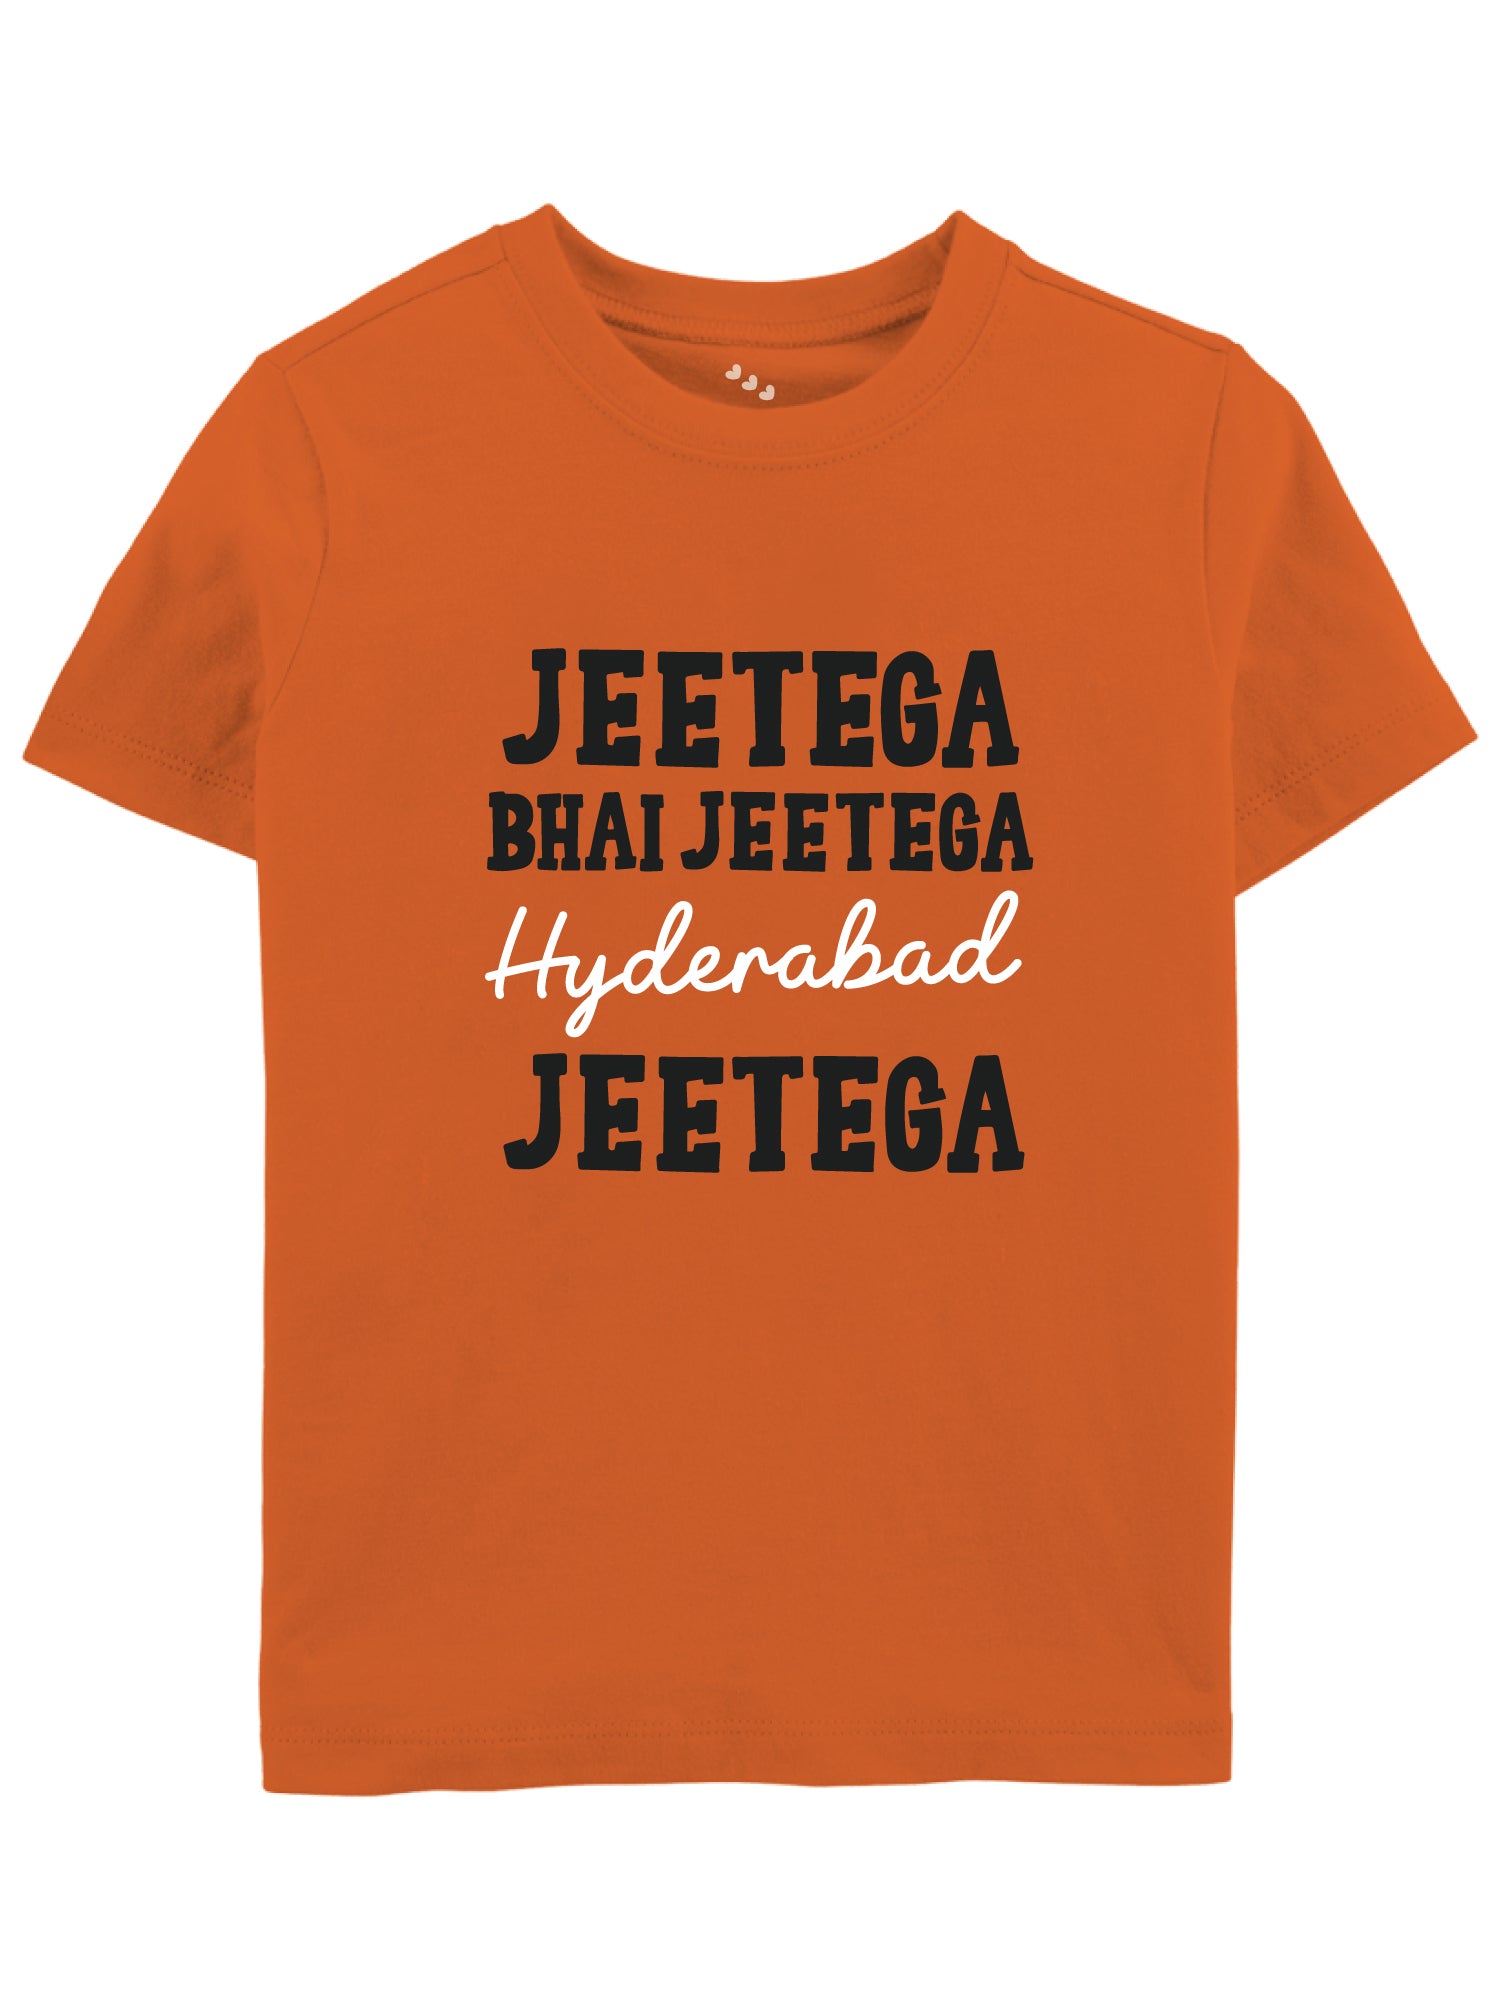 Jeetega Bhai Jeetega Hyderabad Jeetega - Tee